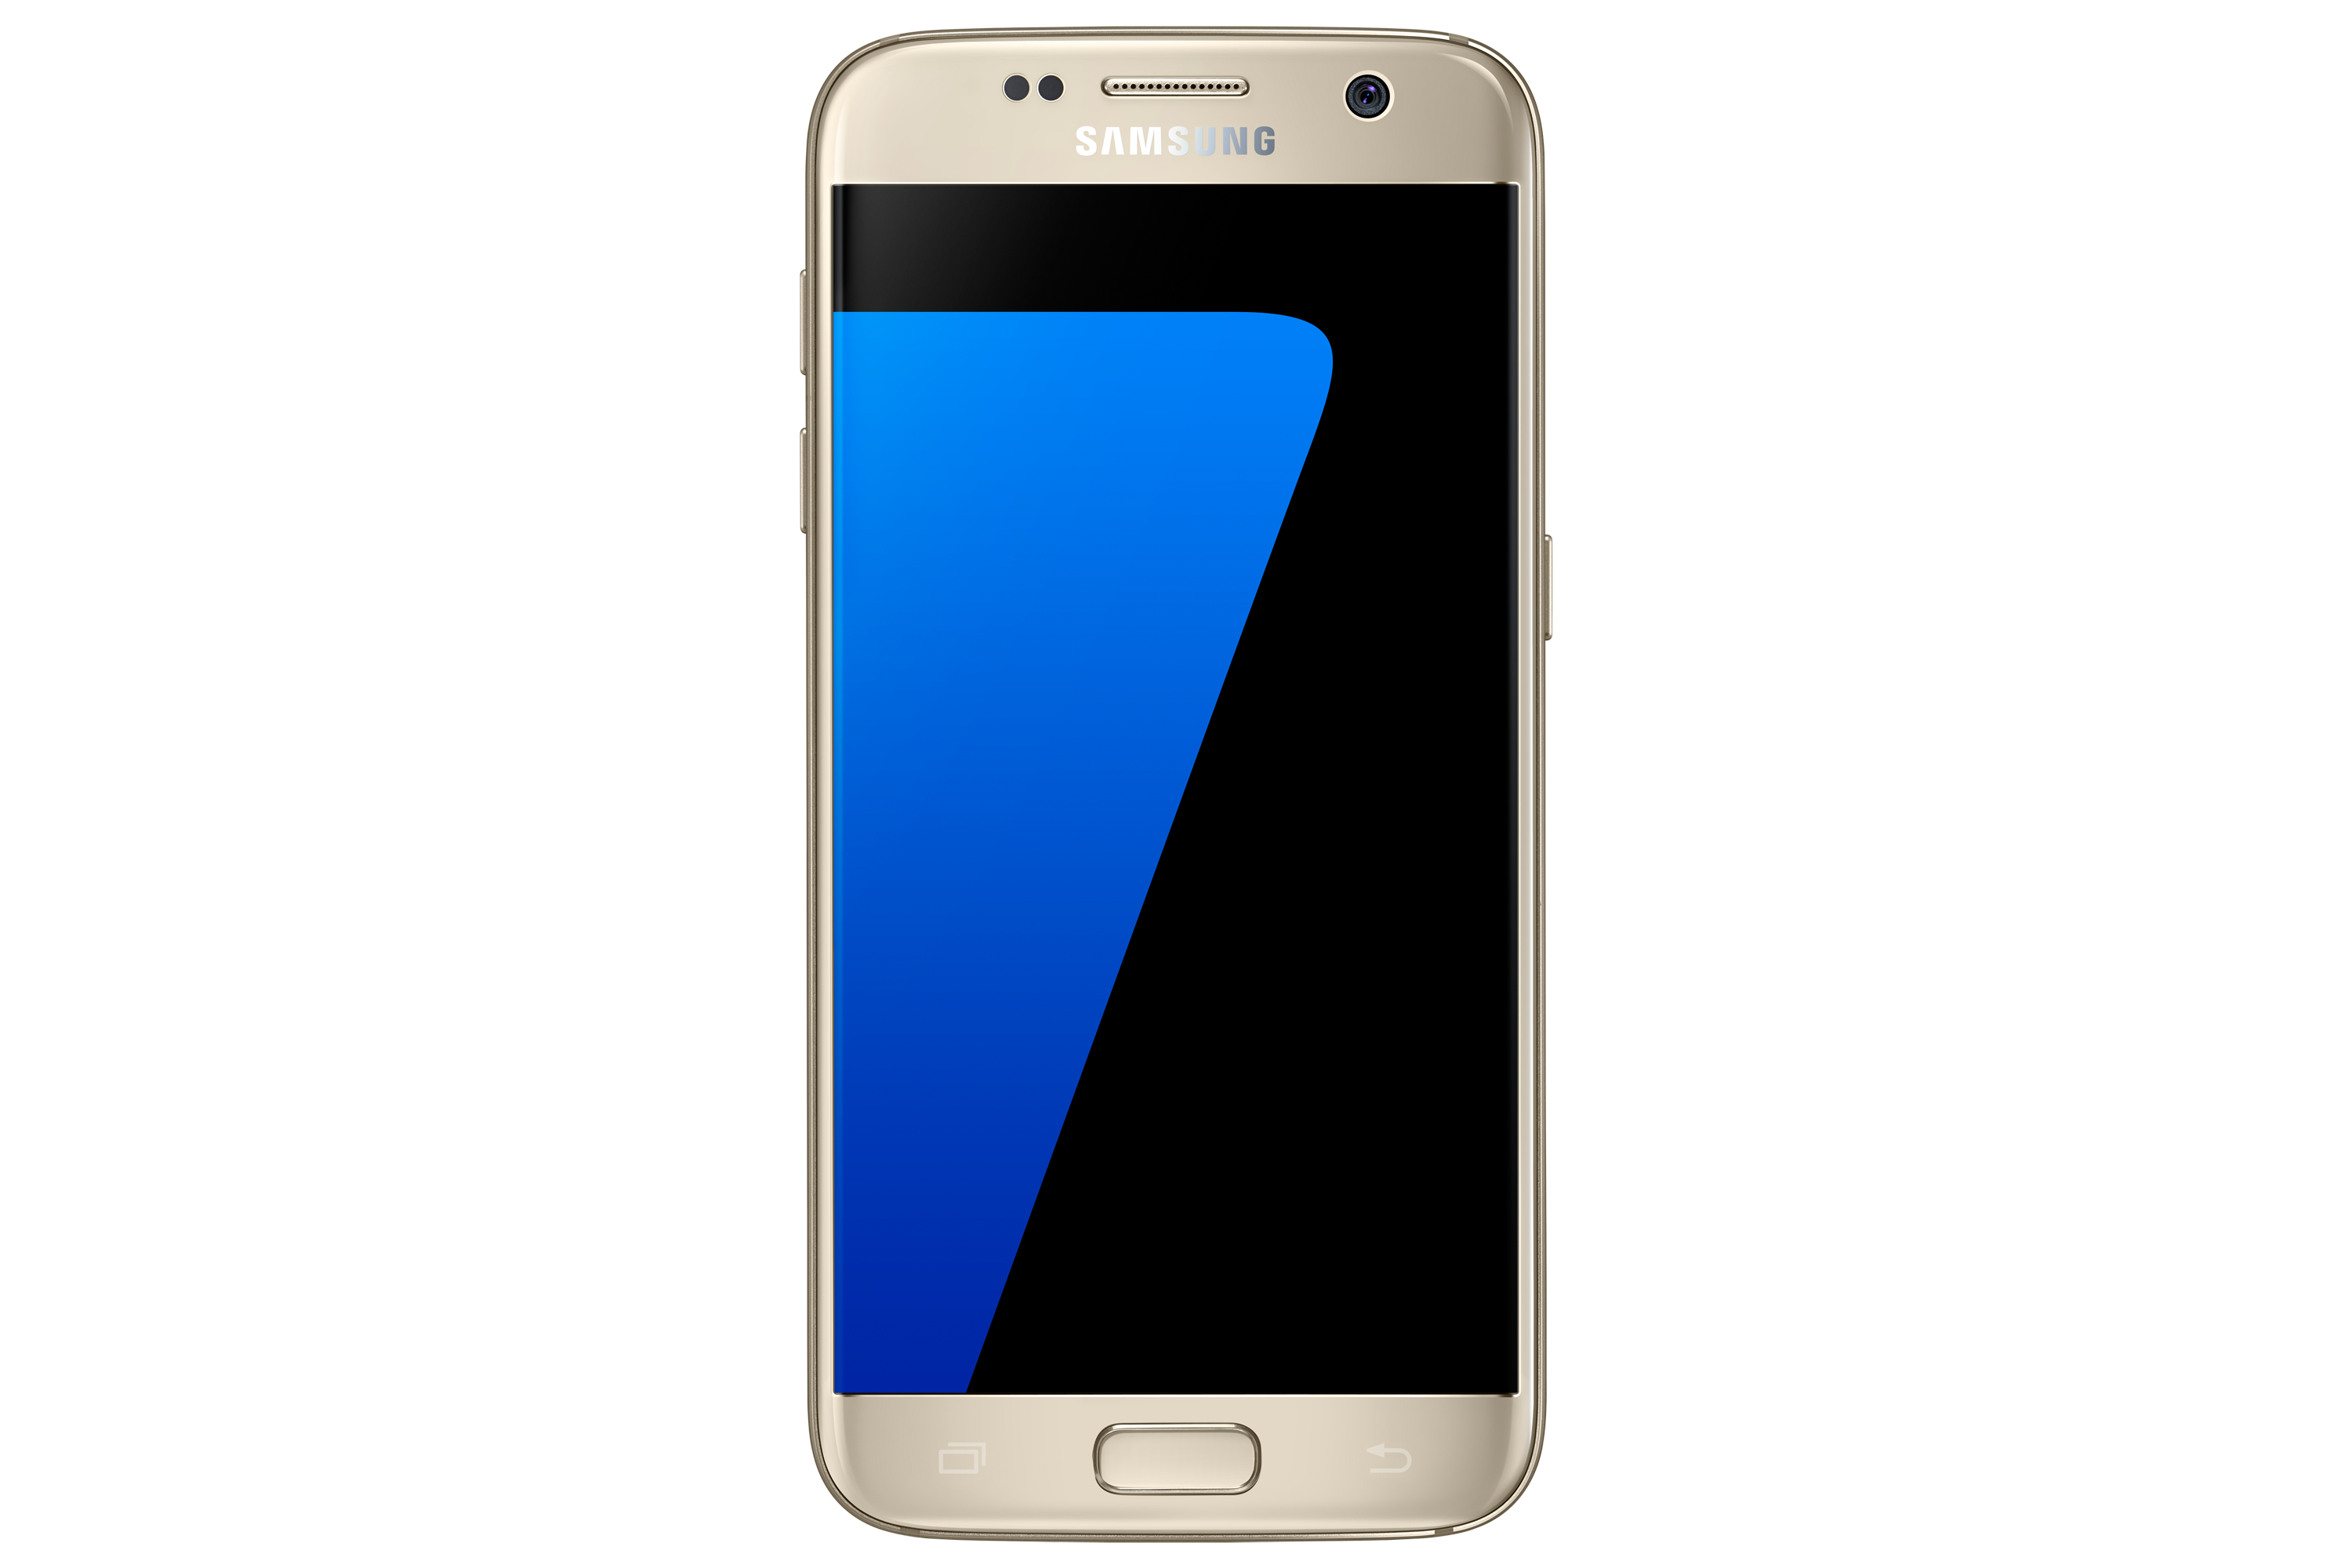 Tegenslag vragen Excursie Singtel Samsung Galaxy S7 4G+ And Galaxy S7 edge 4G+ Price Plans « Blog |  lesterchan.net